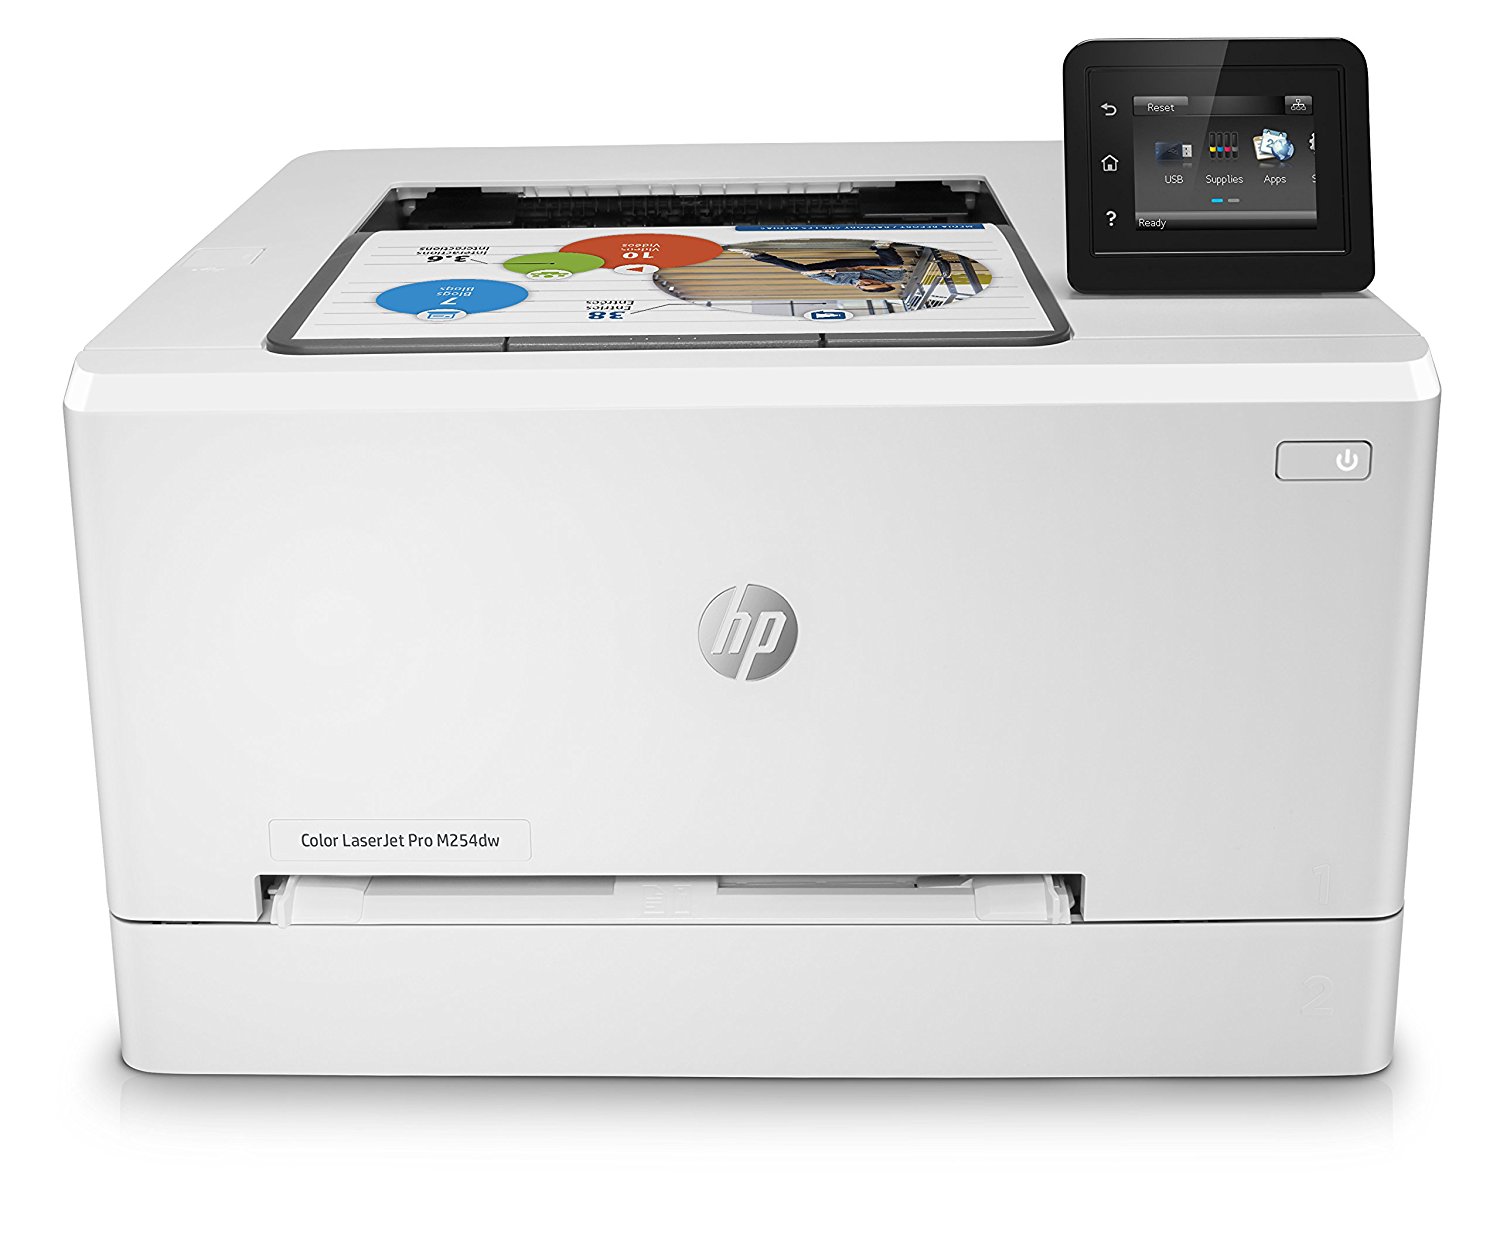 HP LaserJet Pro M254DW Printer (Color) - Print, Wireless